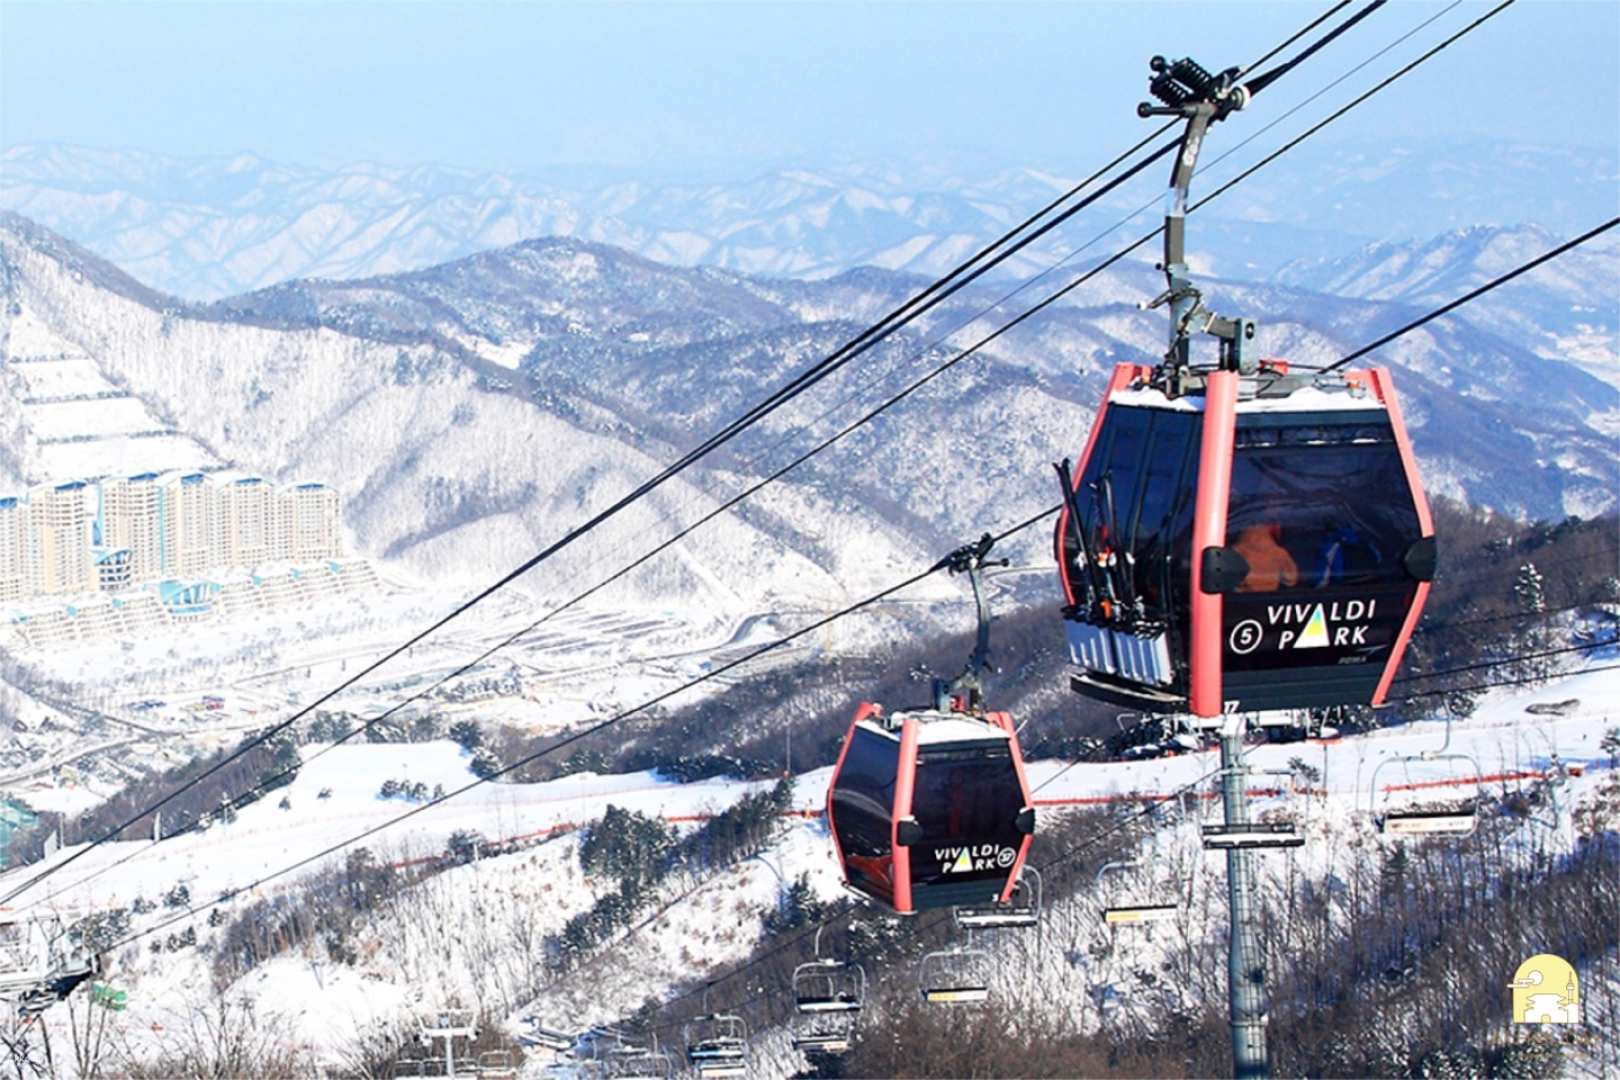 韓國-首爾近郊滑雪| 江原道洪川大明維瓦爾第度假村 Vivaldi Park 初級滑雪一天團| 首爾出發